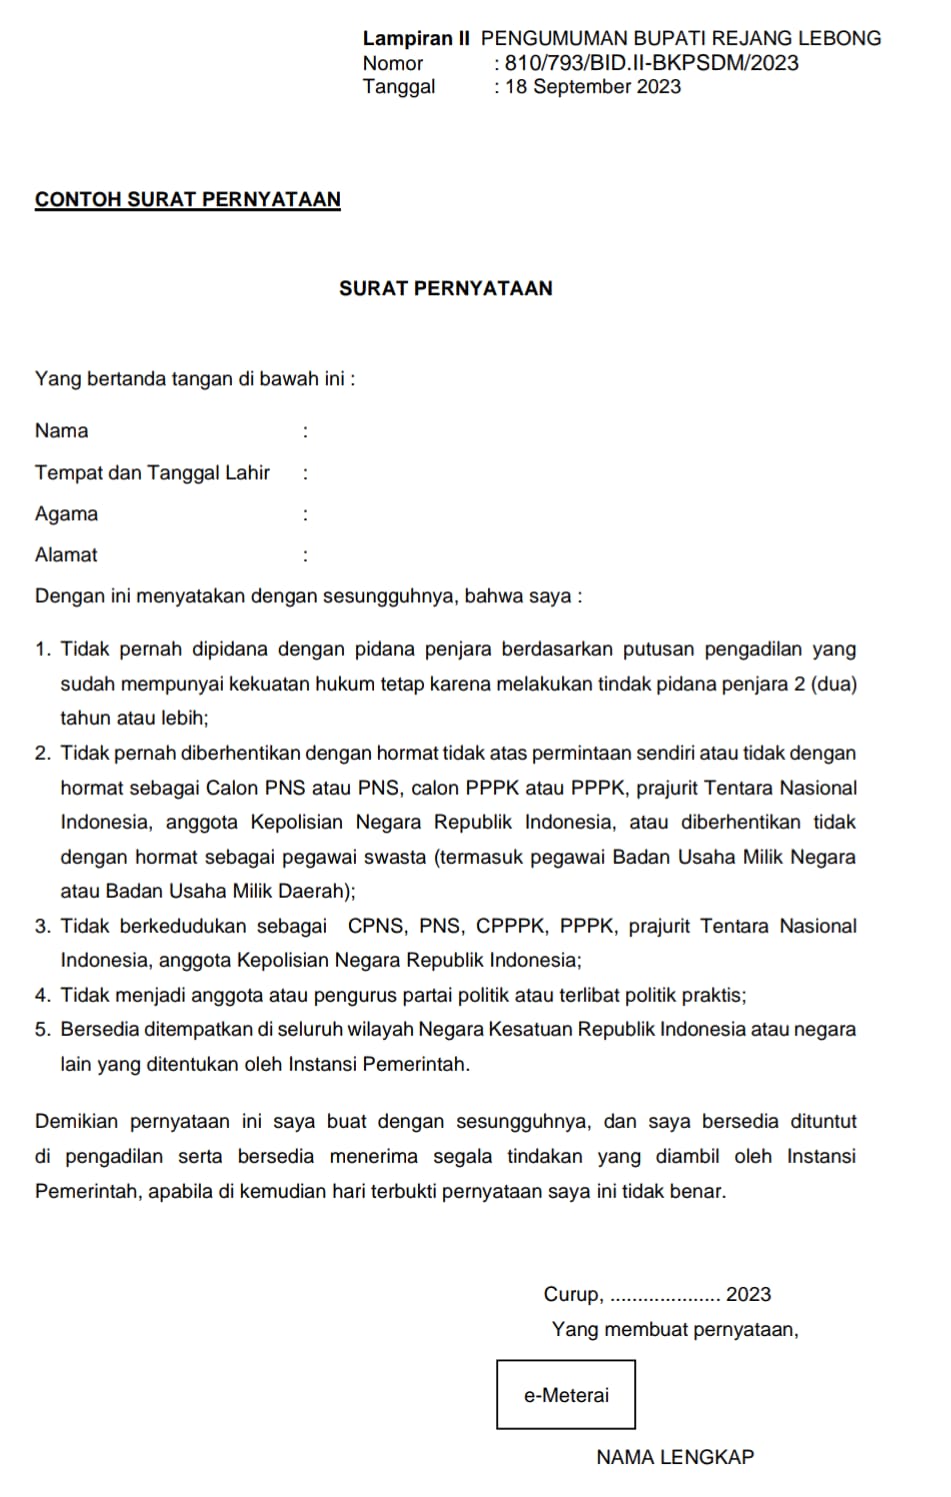 Download Contoh Surat Pernyataan PPPK Kabupaten Rejang Lebong 2023 di Sini!